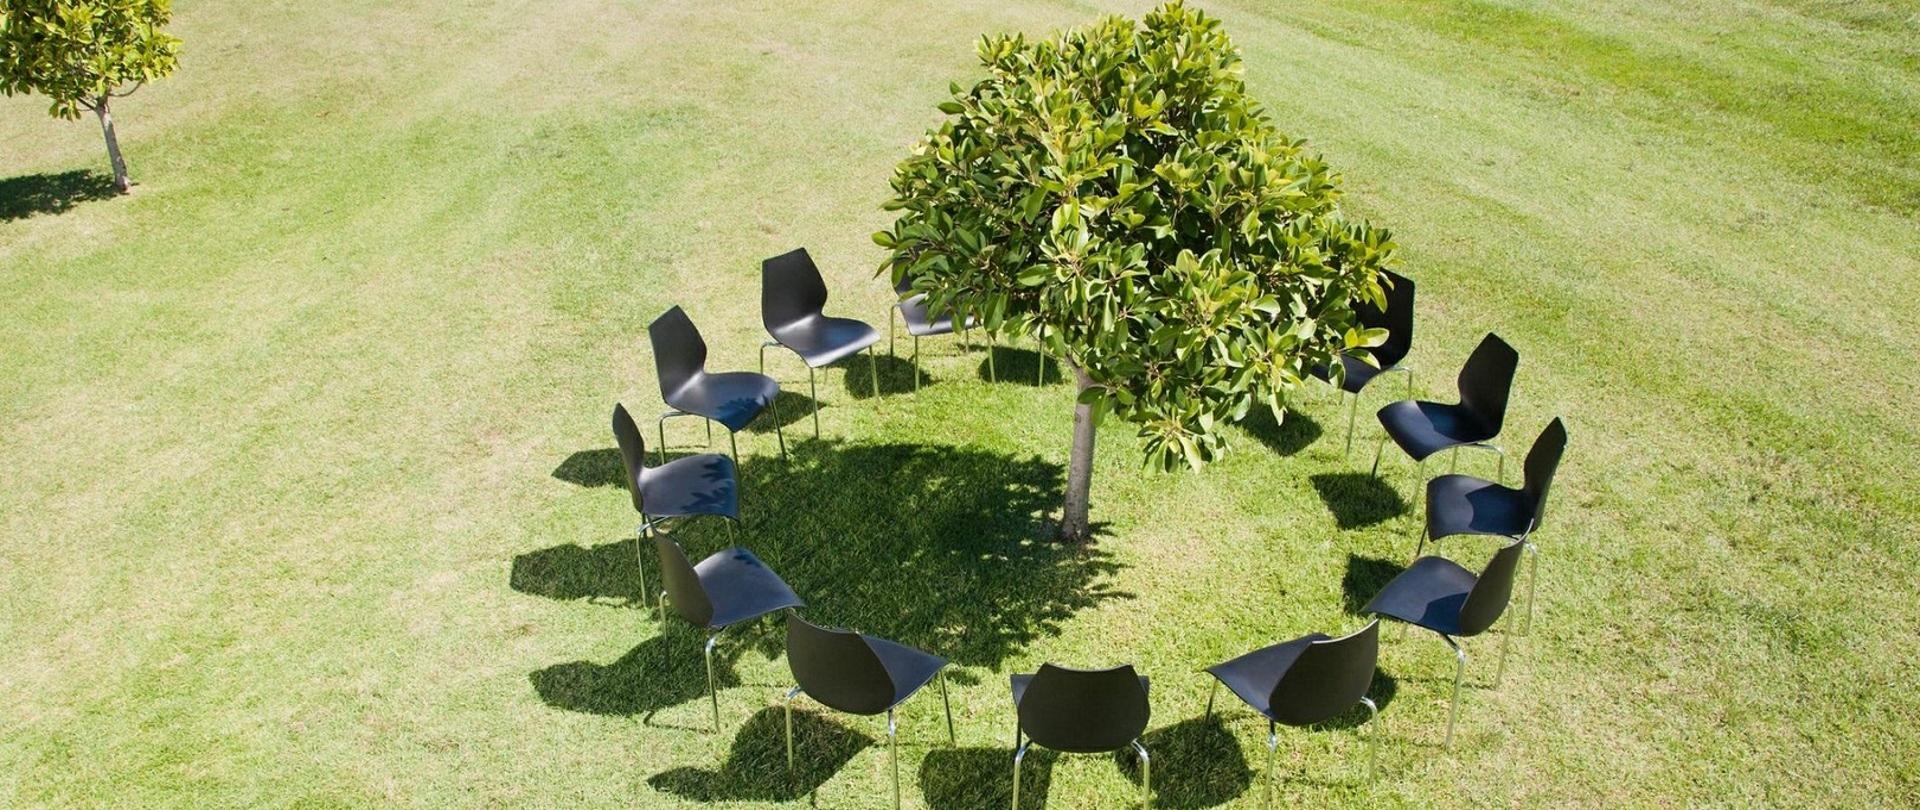 Na zdjęciu drzewo a wokół niego krzesła